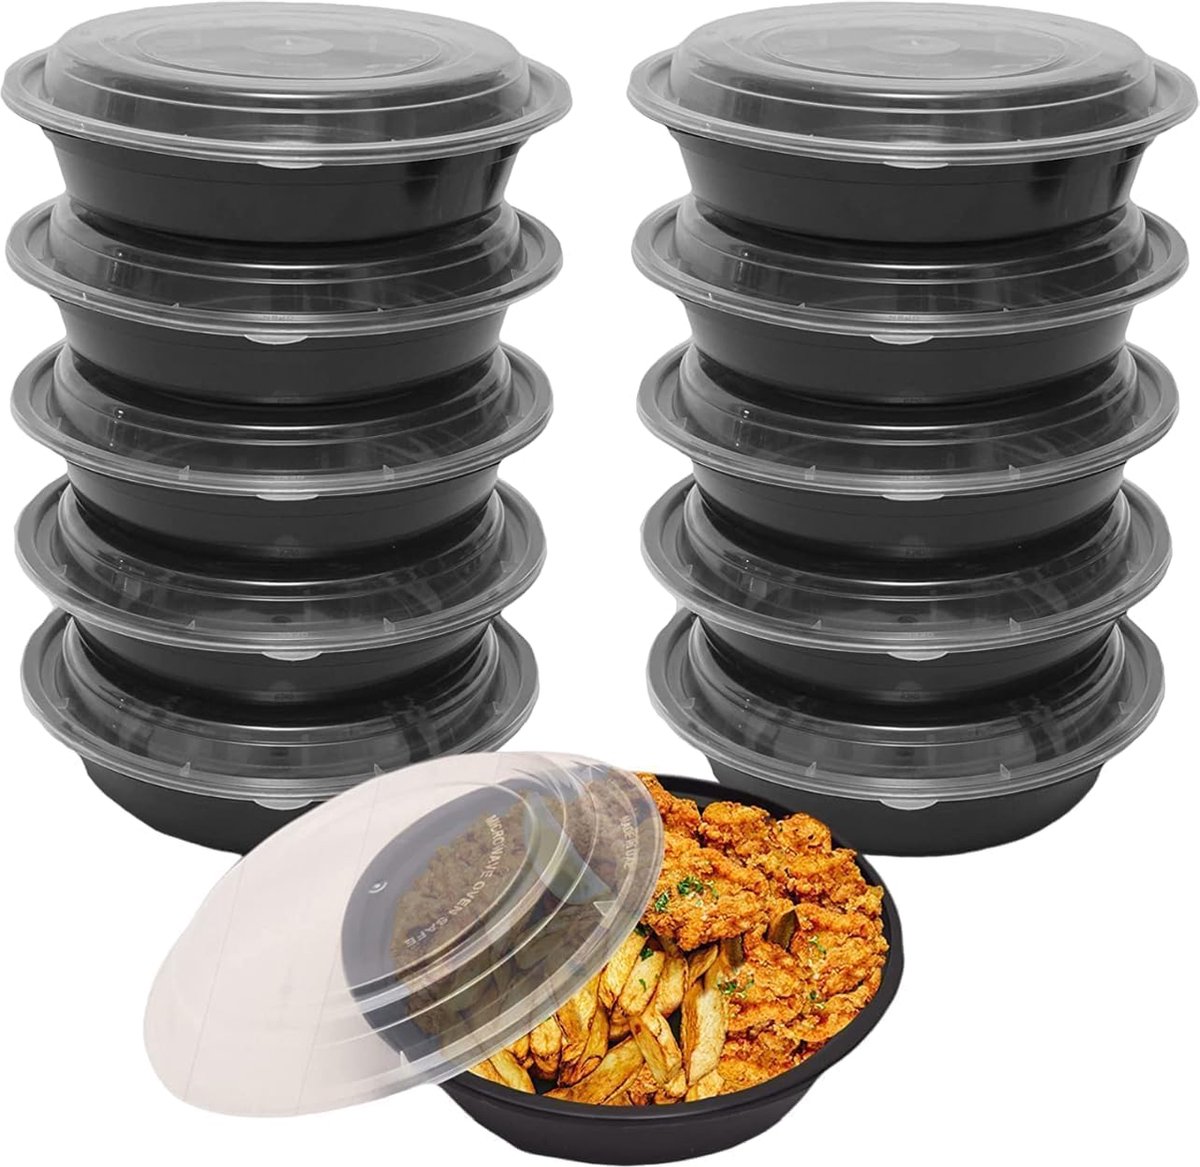 FUZON Ronde plastic maaltijdbereidingscontainers - Herbruikbare BPA-vrije voedselcontainers met luchtdichte deksels - Magnetronbestendig, vriezer- en vaatwasserbestendig. (10 stuks, 946ML)